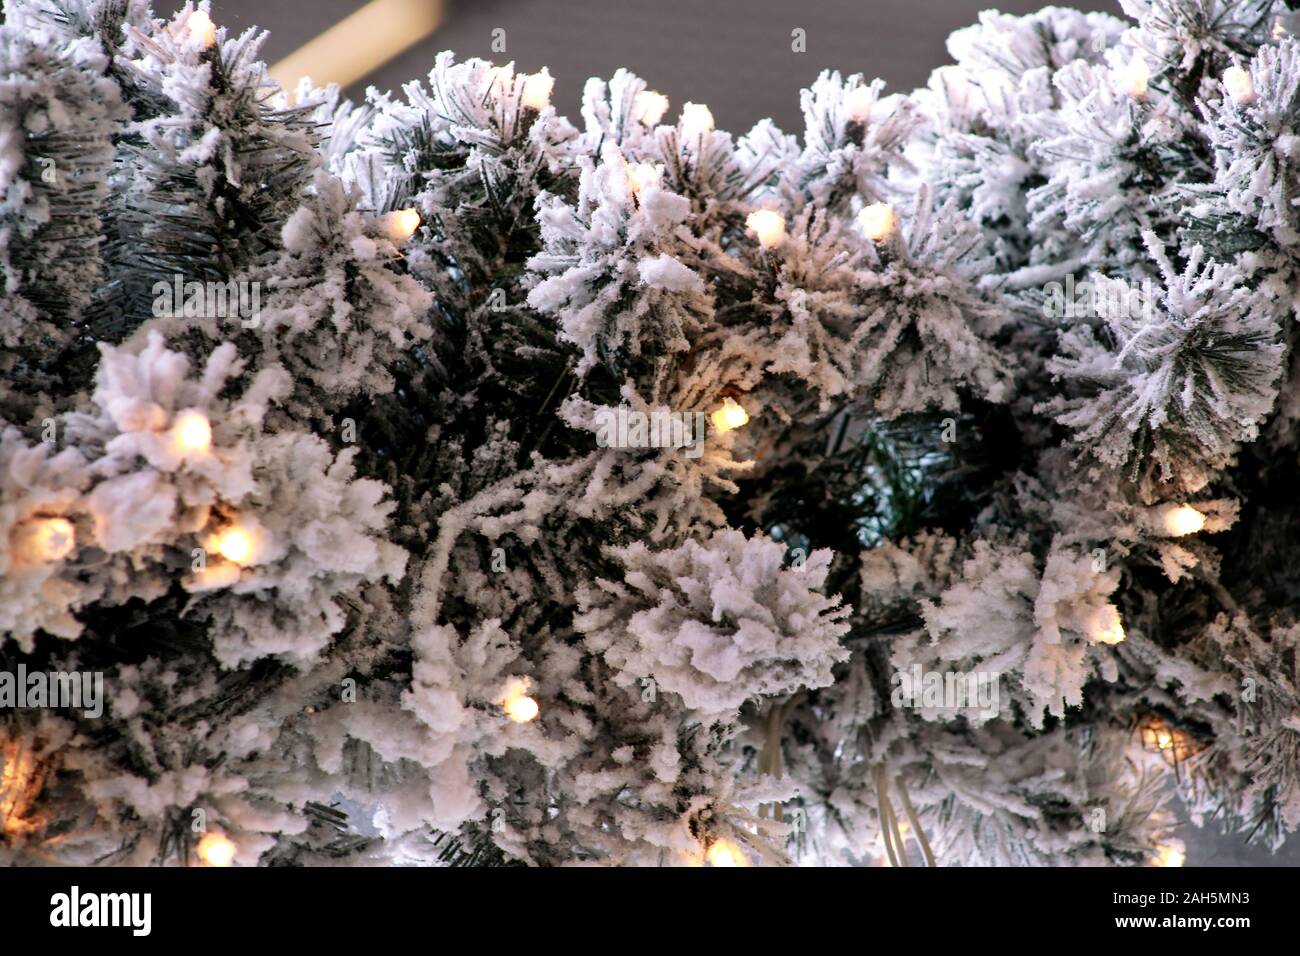 Traditionelle Weihnachten blinkende Lichter auf grüne Zweige Baum der Kiefer mit Schnee im Winter abgedeckt. Tannenbaum Äste mit string Reis Glühlampen. Stockfoto